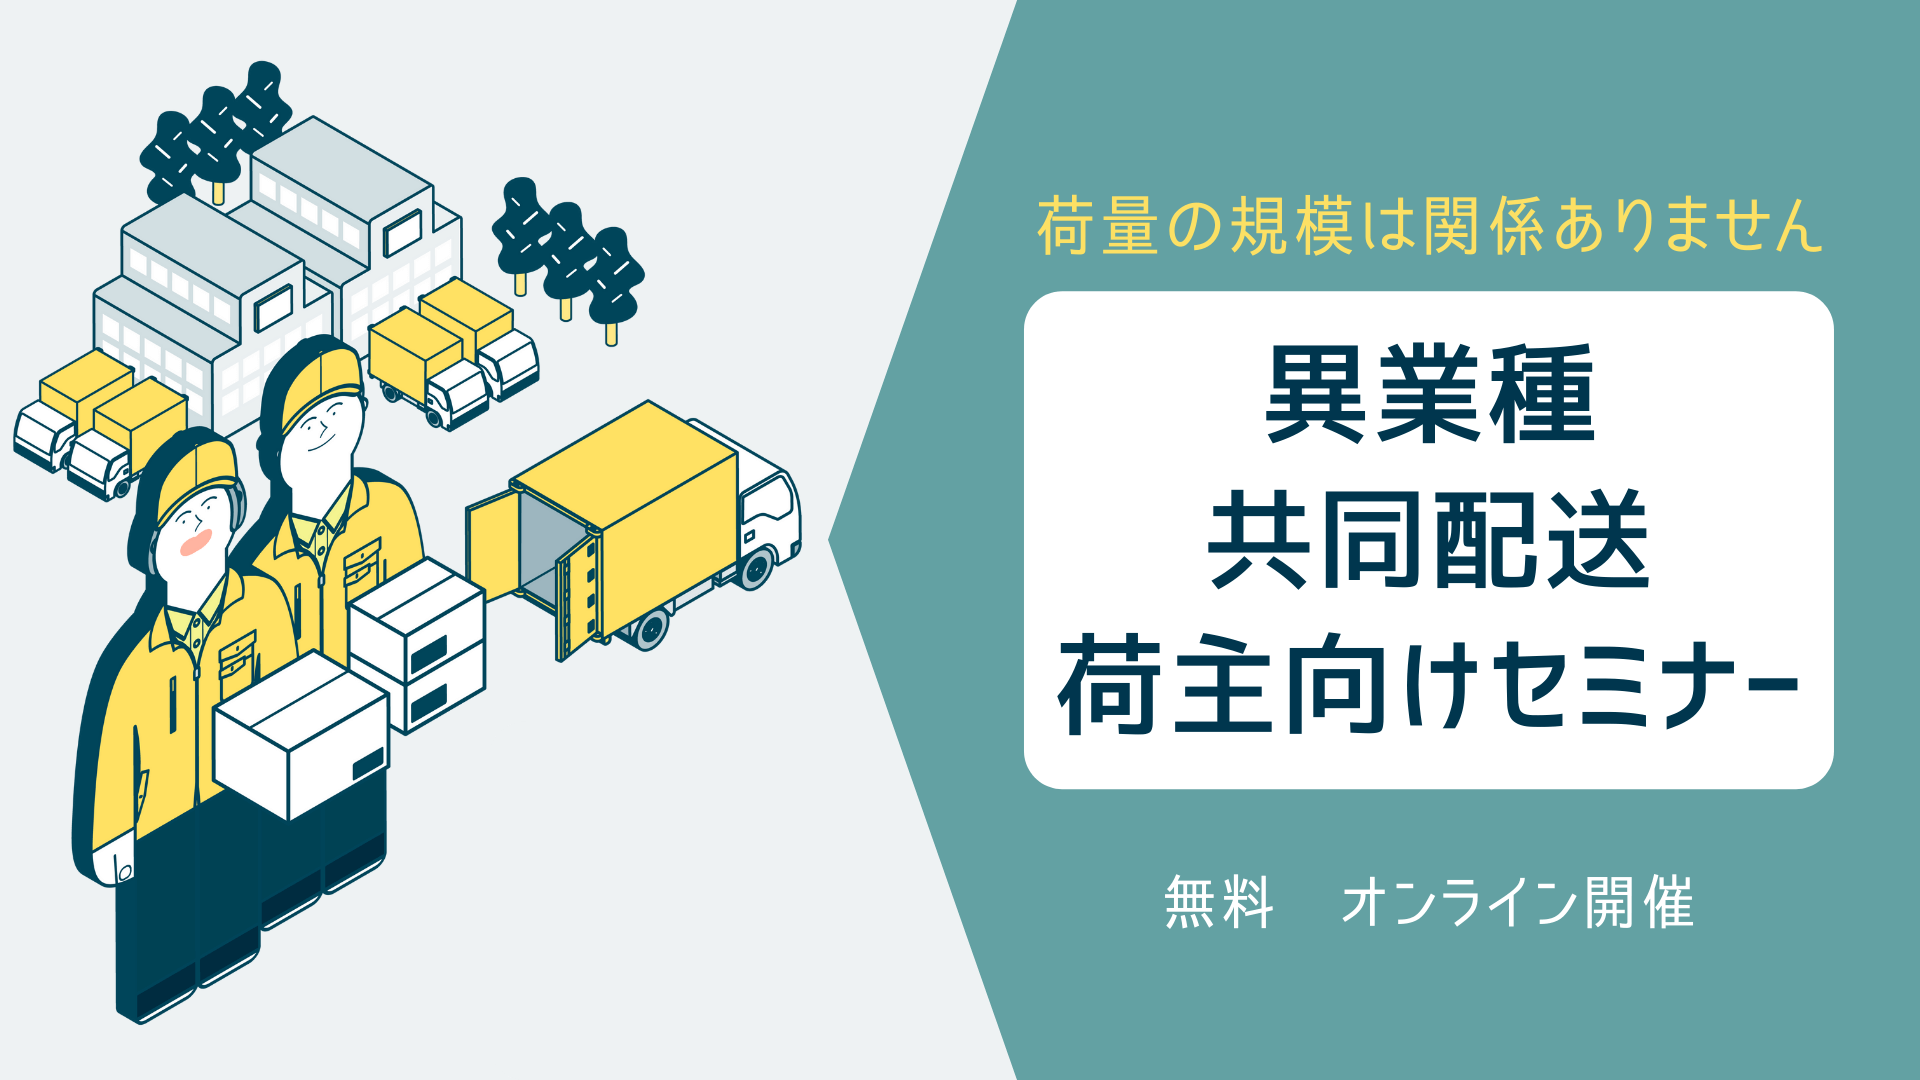 船井総研ロジ株式会社「第5回 異業種共同配送荷主向けセミナー」